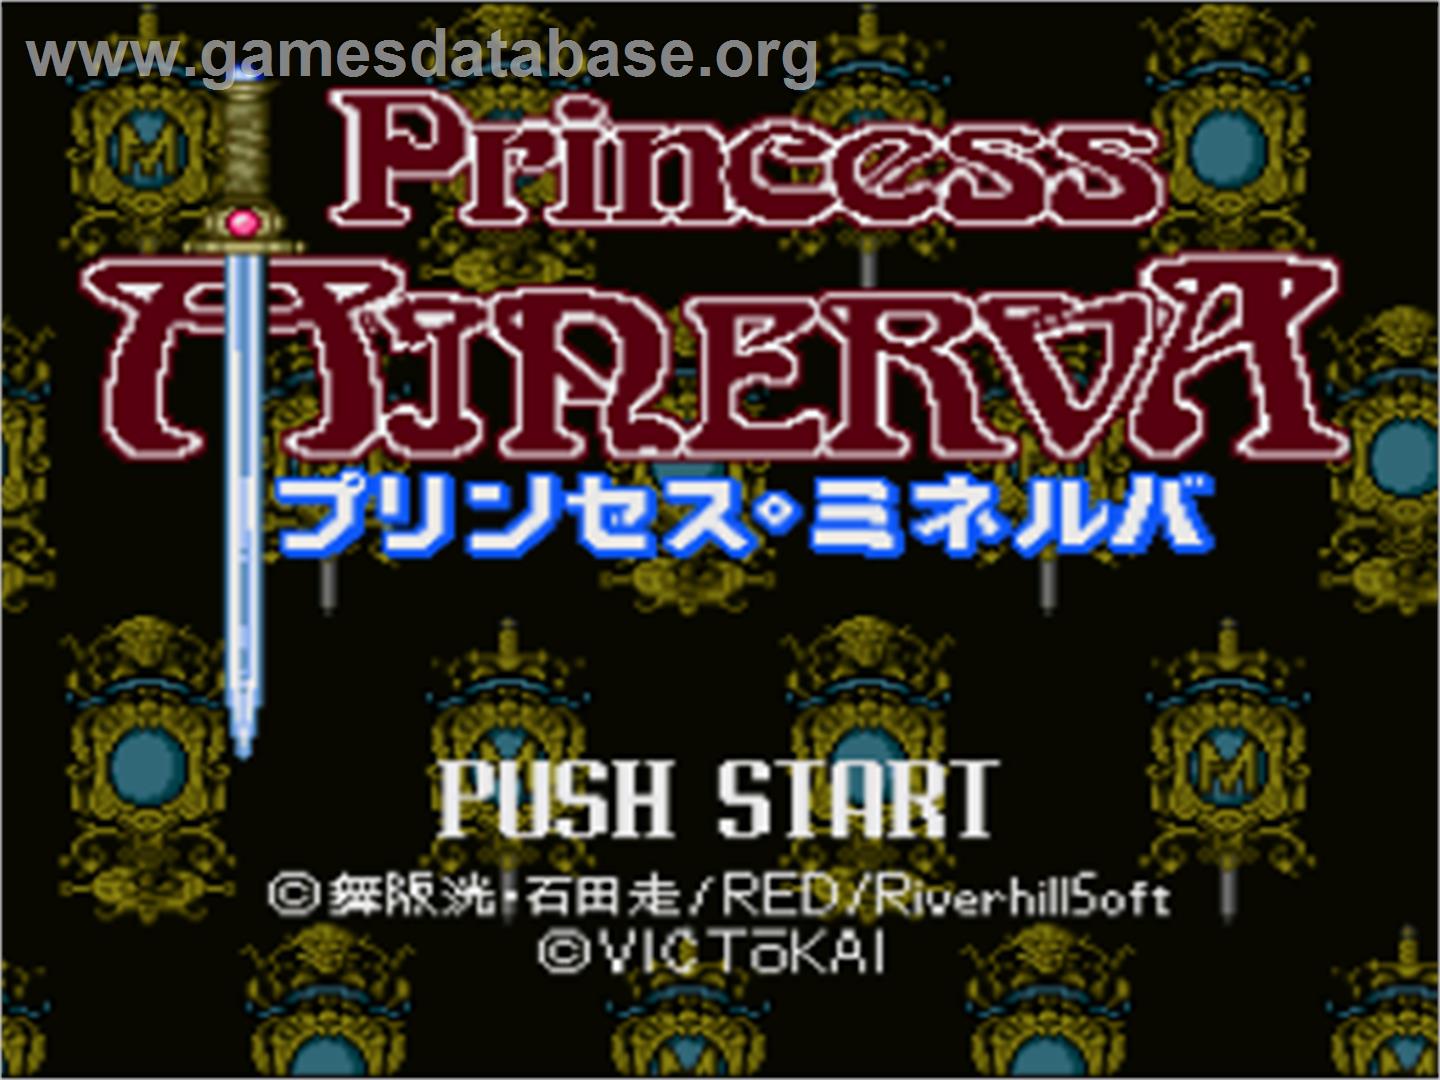 Princess Minerva - Nintendo SNES - Artwork - Title Screen